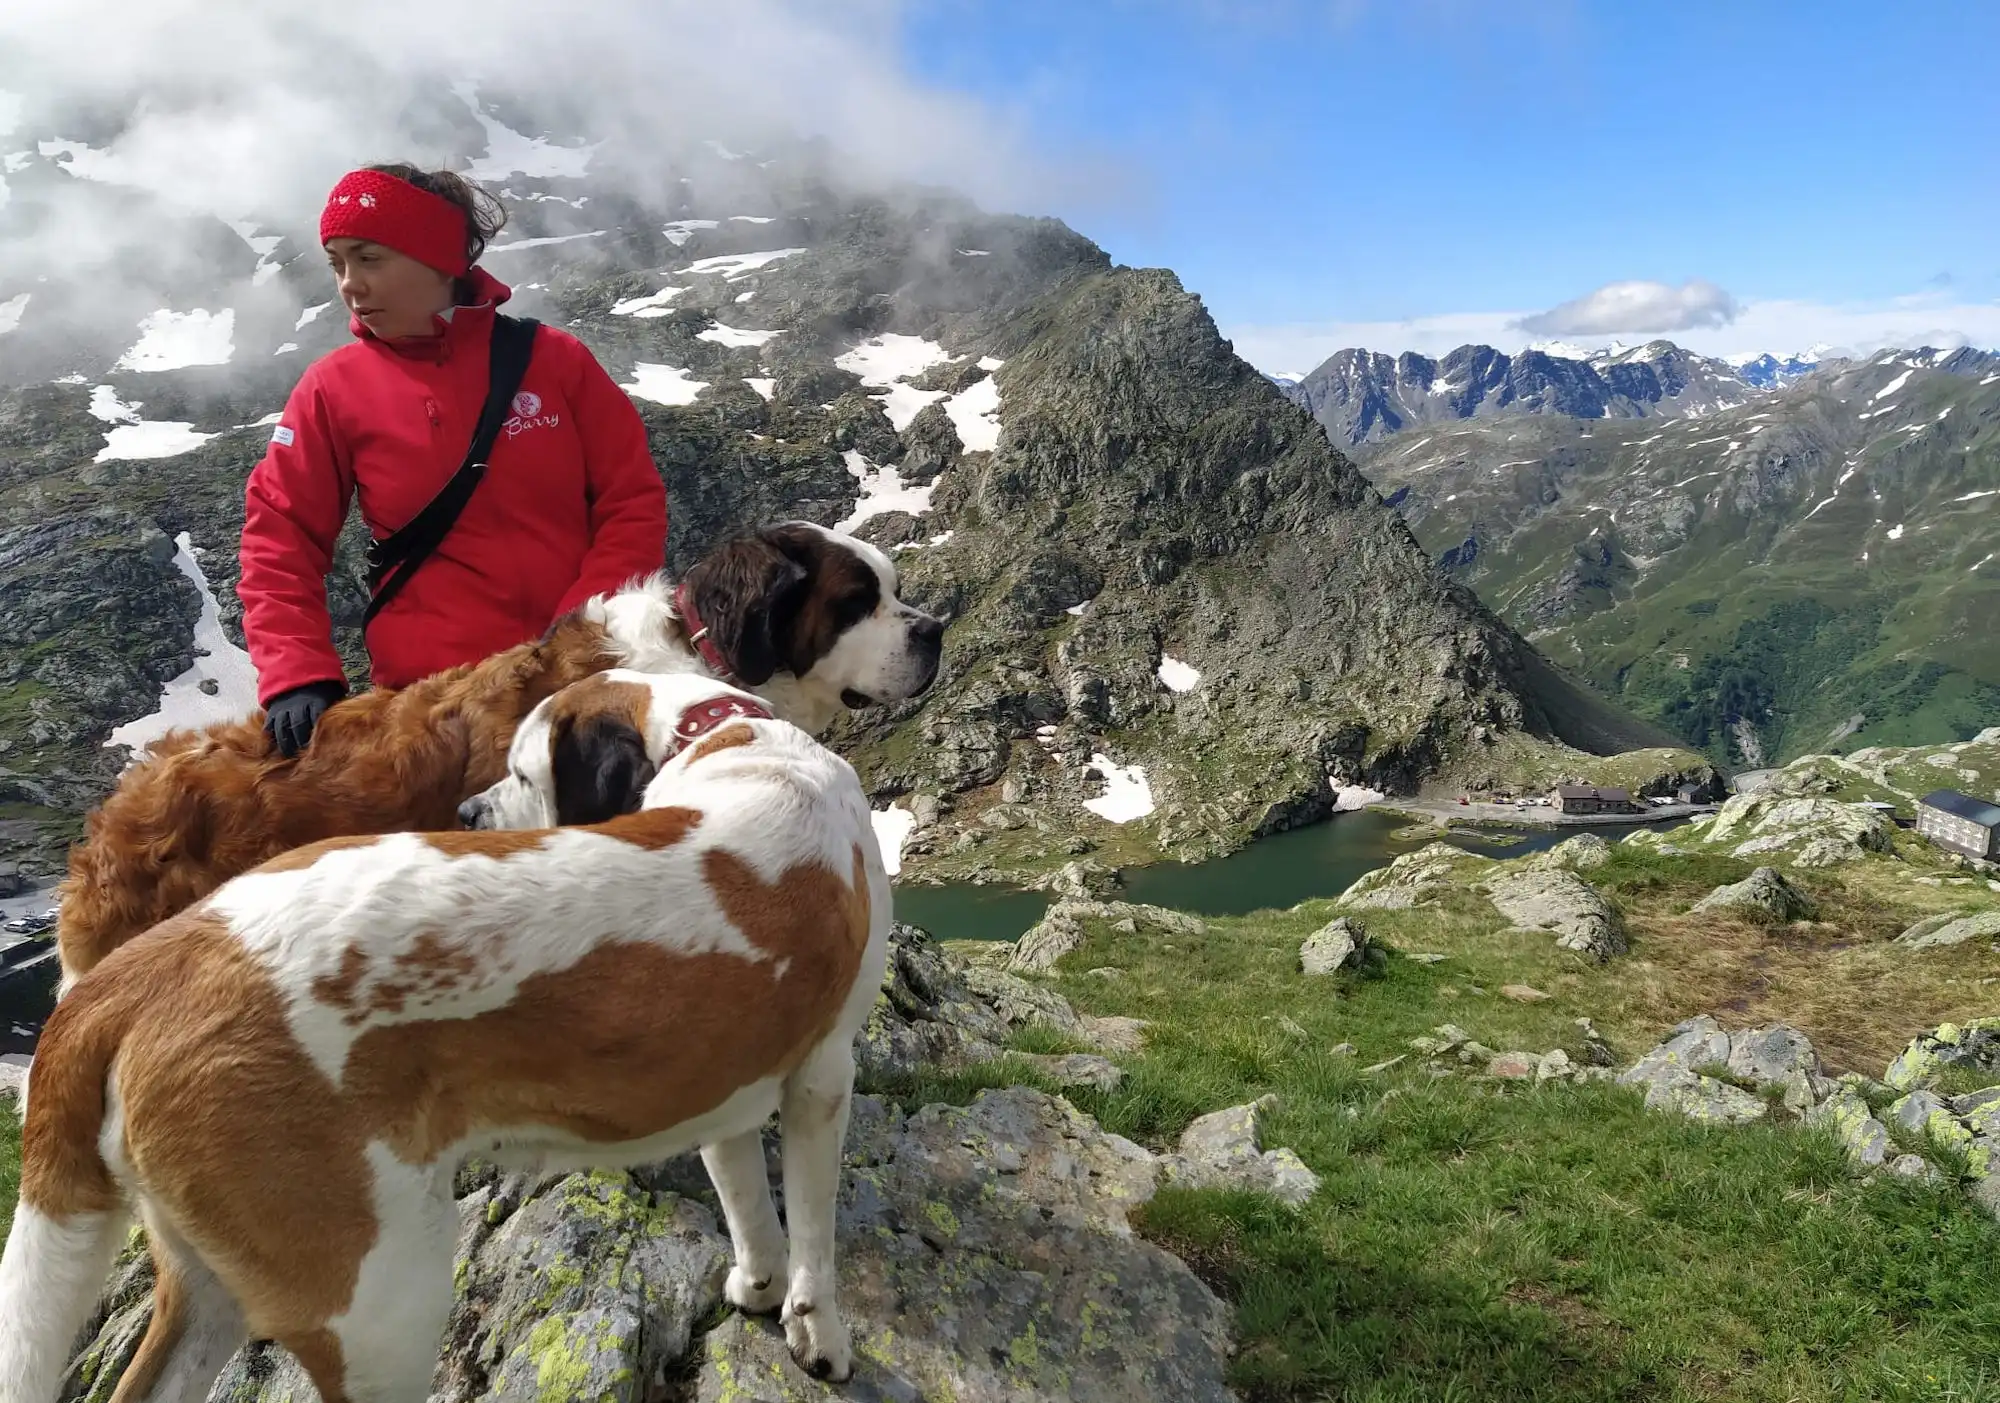 Escursioni da fare in Svizzera: giro sui sentieri del Gran San Bernardo con i cani (è bellissimo!)